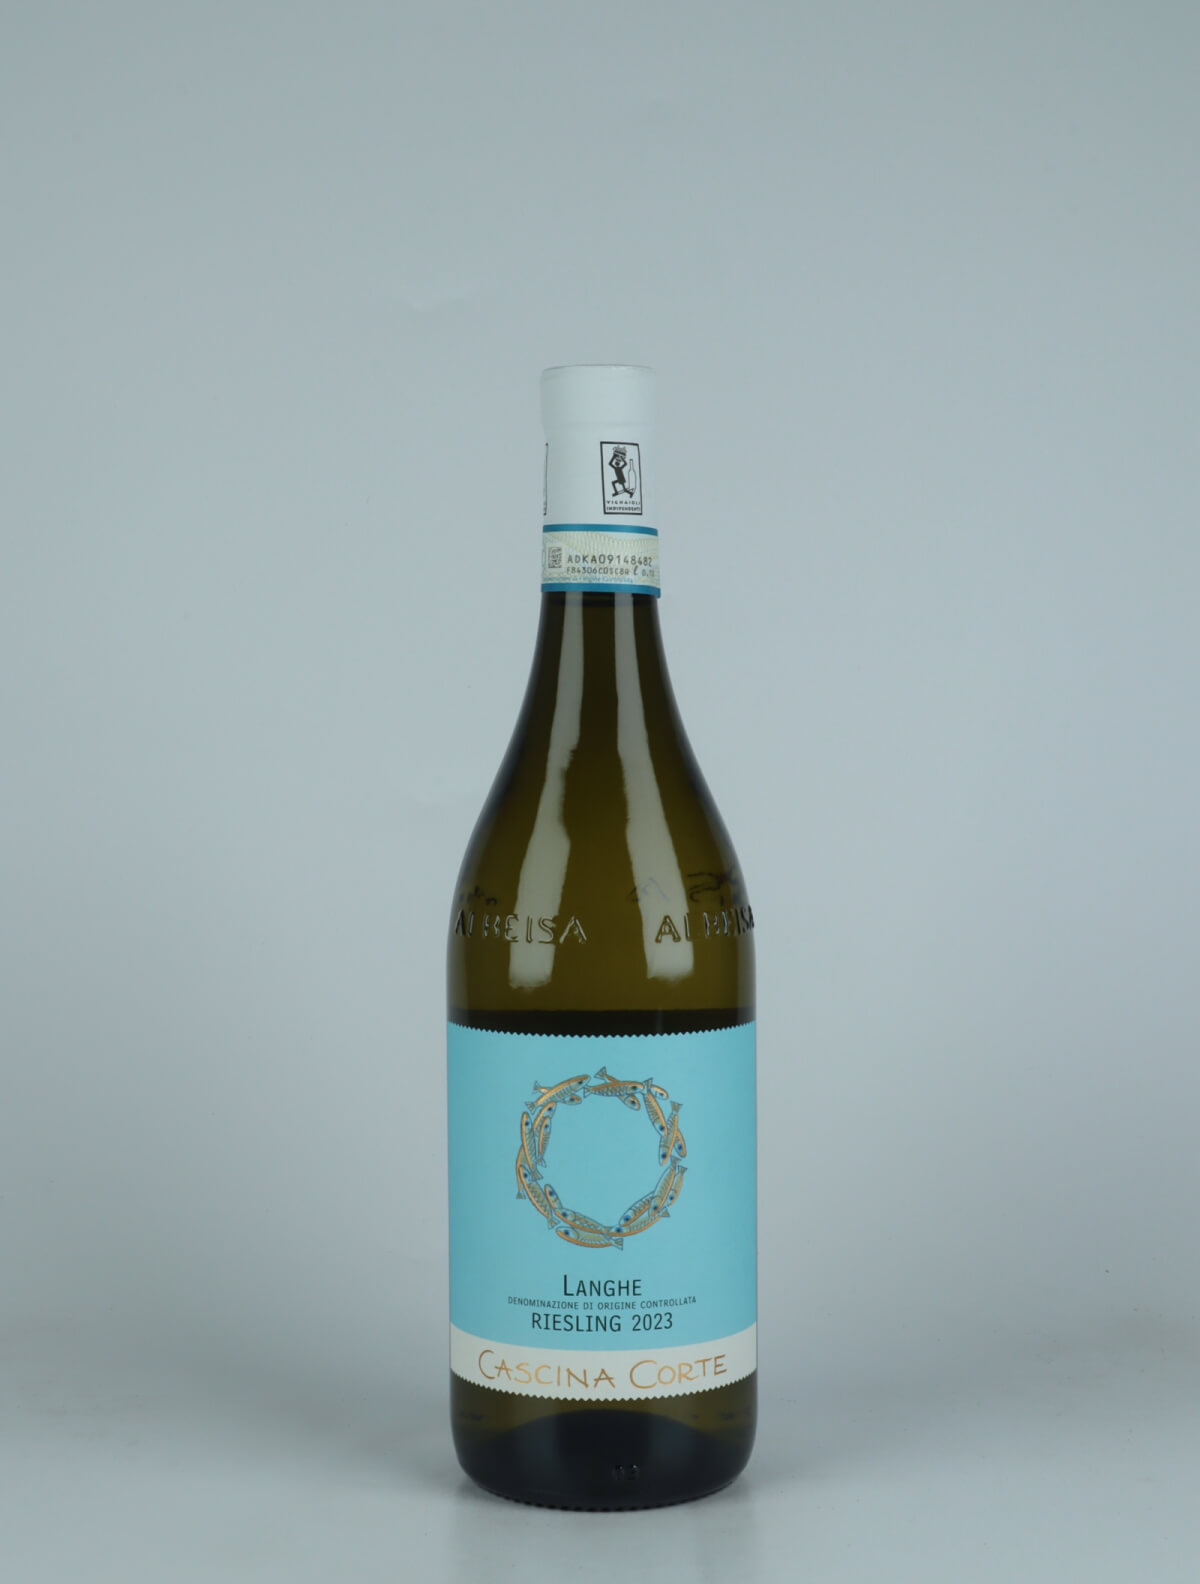 En flaske 2023 Langhe Riesling Hvidvin fra Cascina Corte, Piemonte i Italien